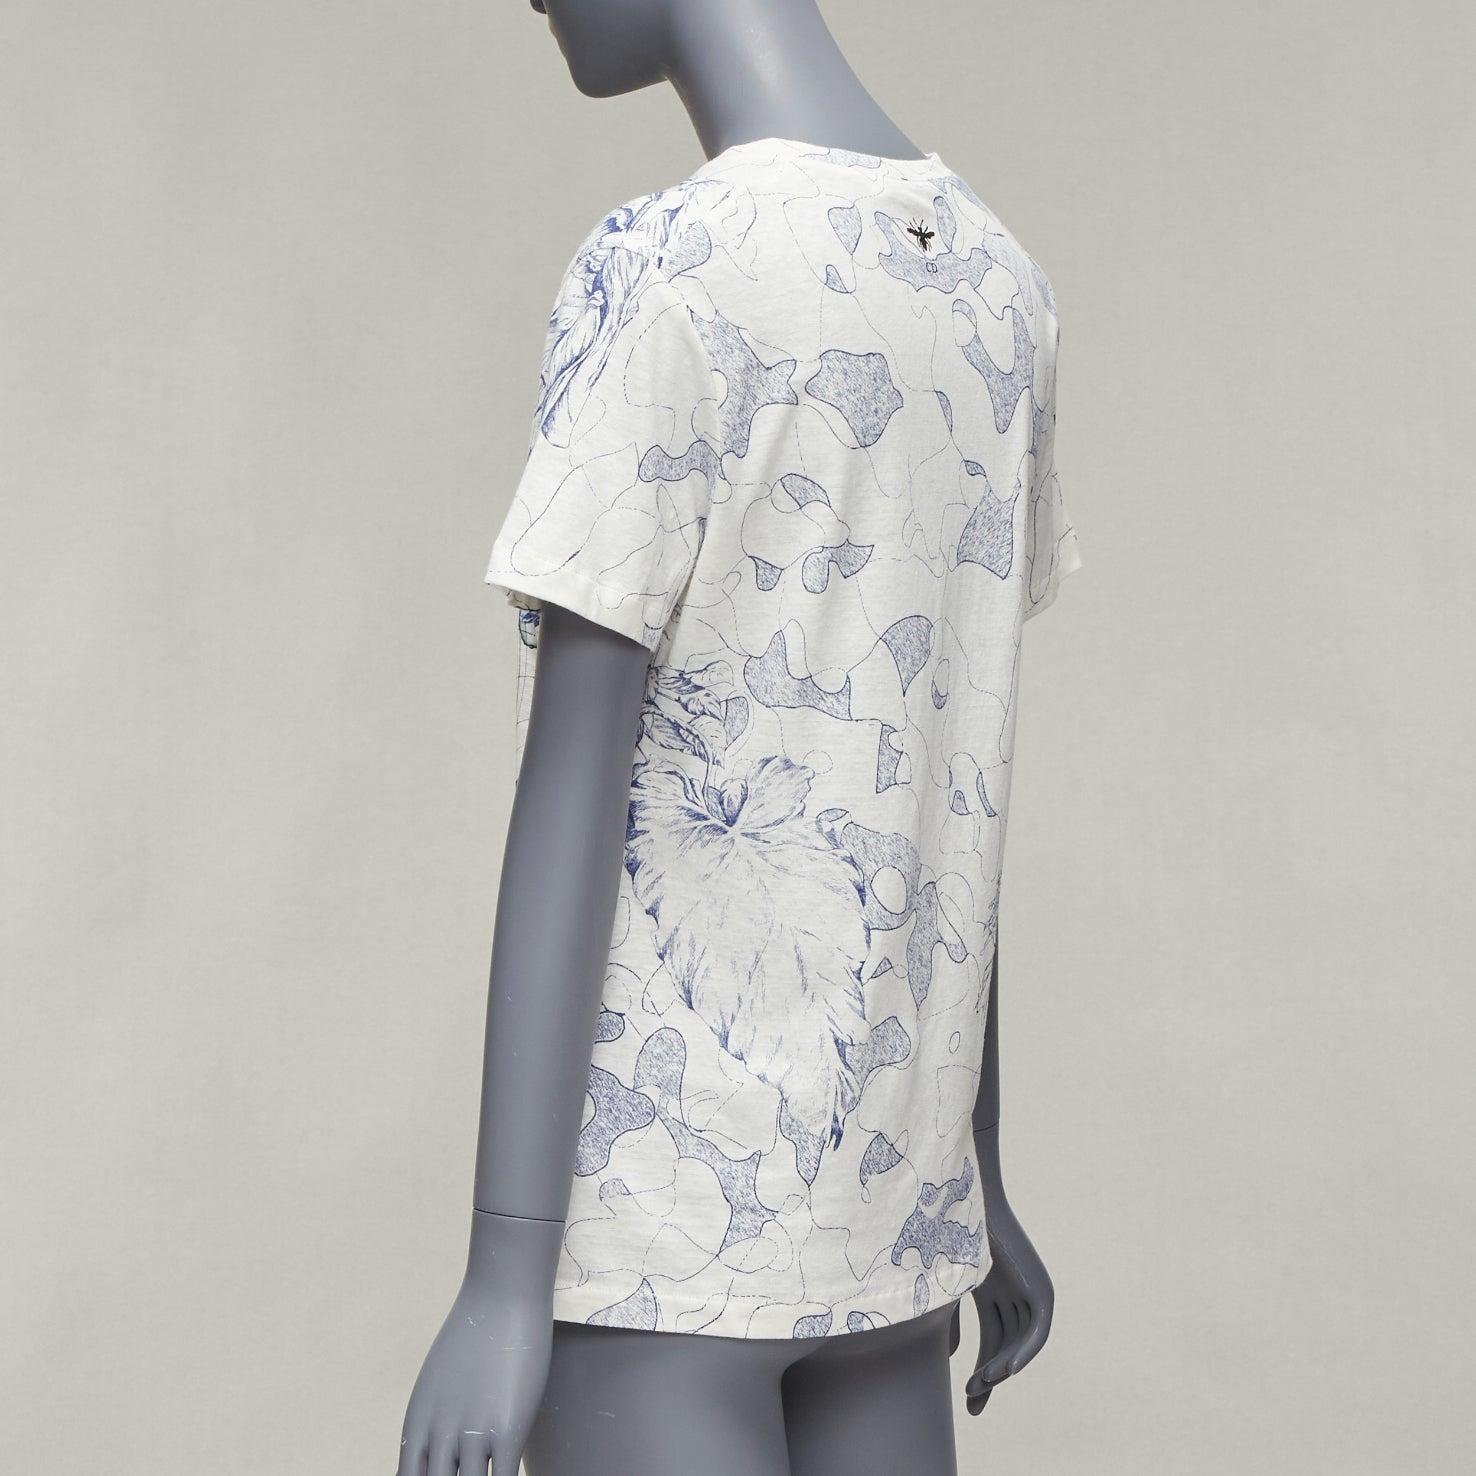 DIOR Around The World Fantaisie blue white print cotton linen tshirt XS 2